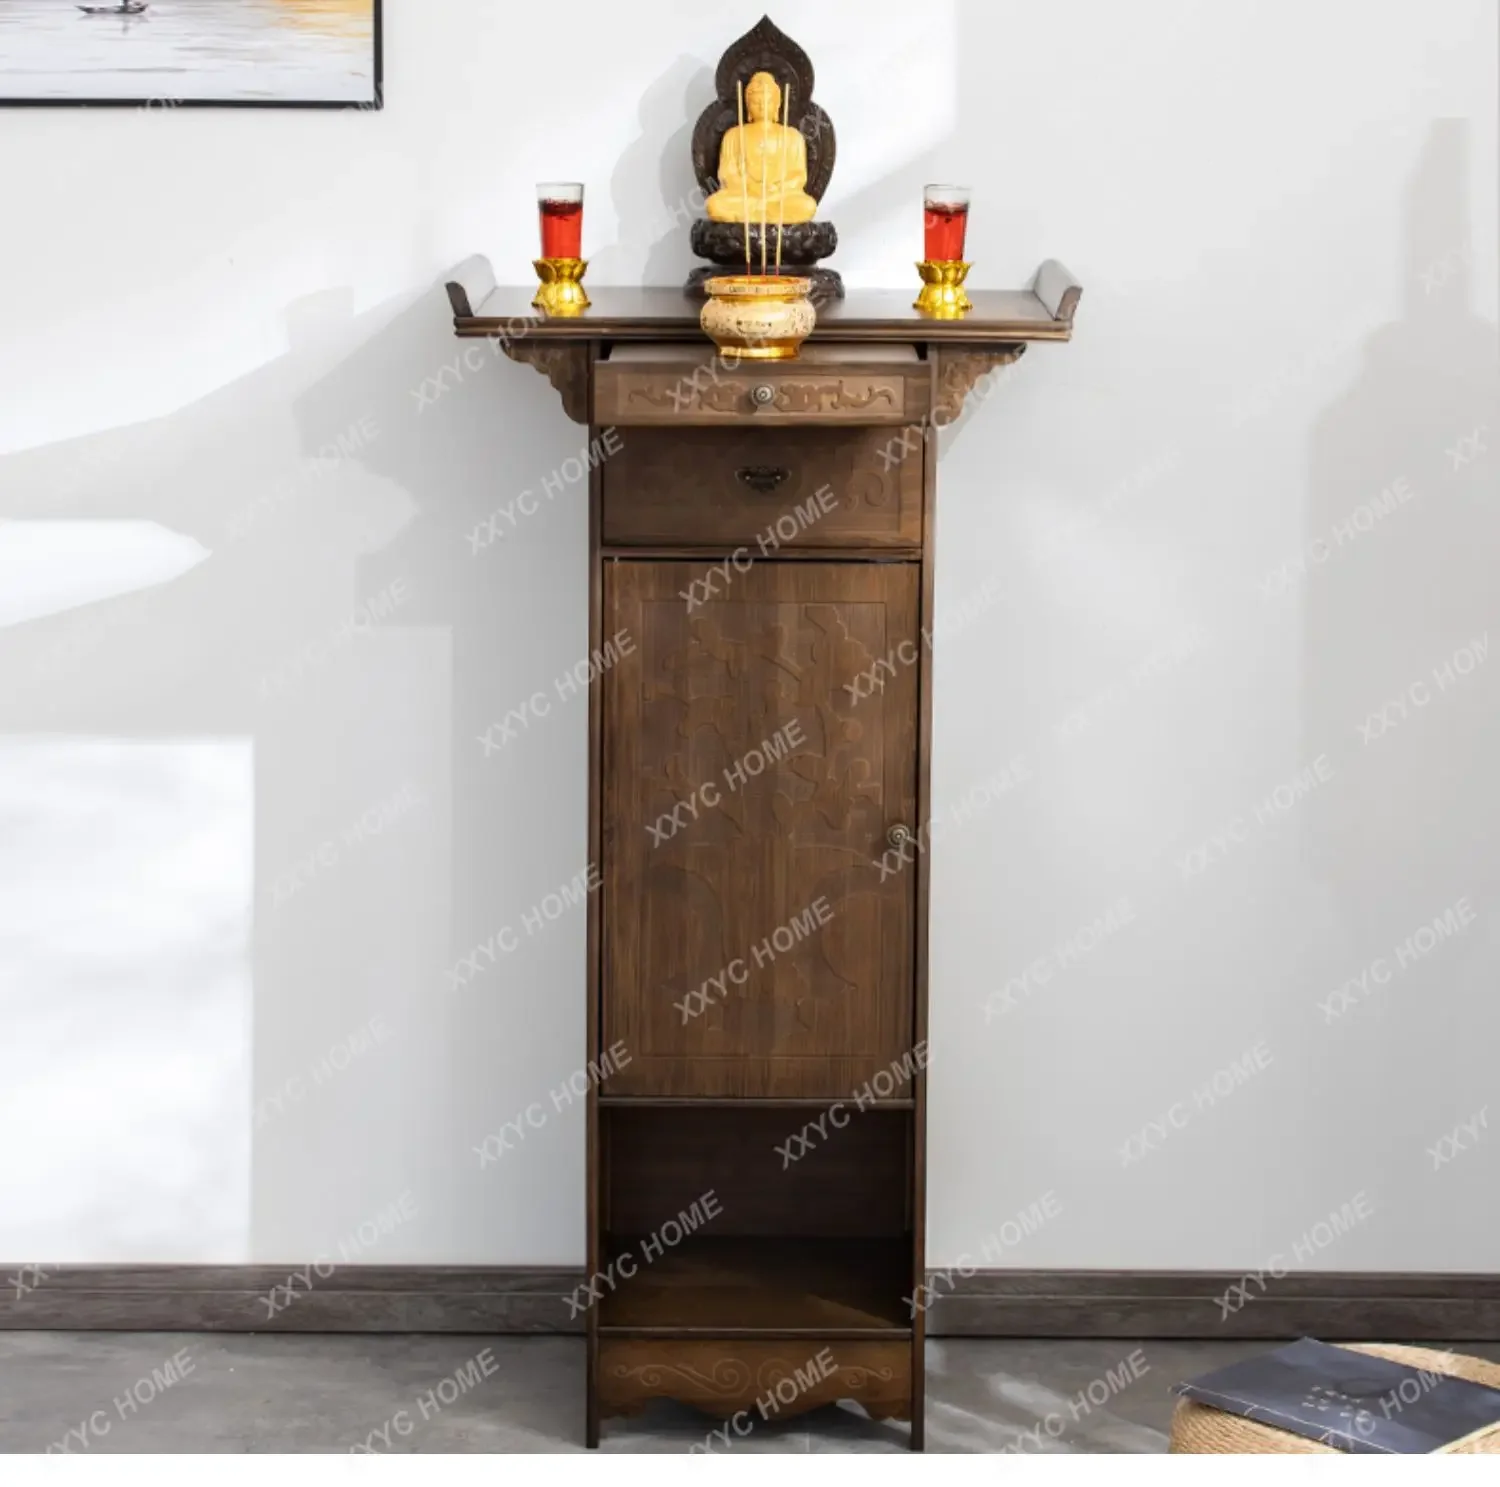 

Будда нишевый алтарь Будда буддистская будрия дом Новый китайский стиль благовония горелка стол гуанин Бог богатства поклонение стол